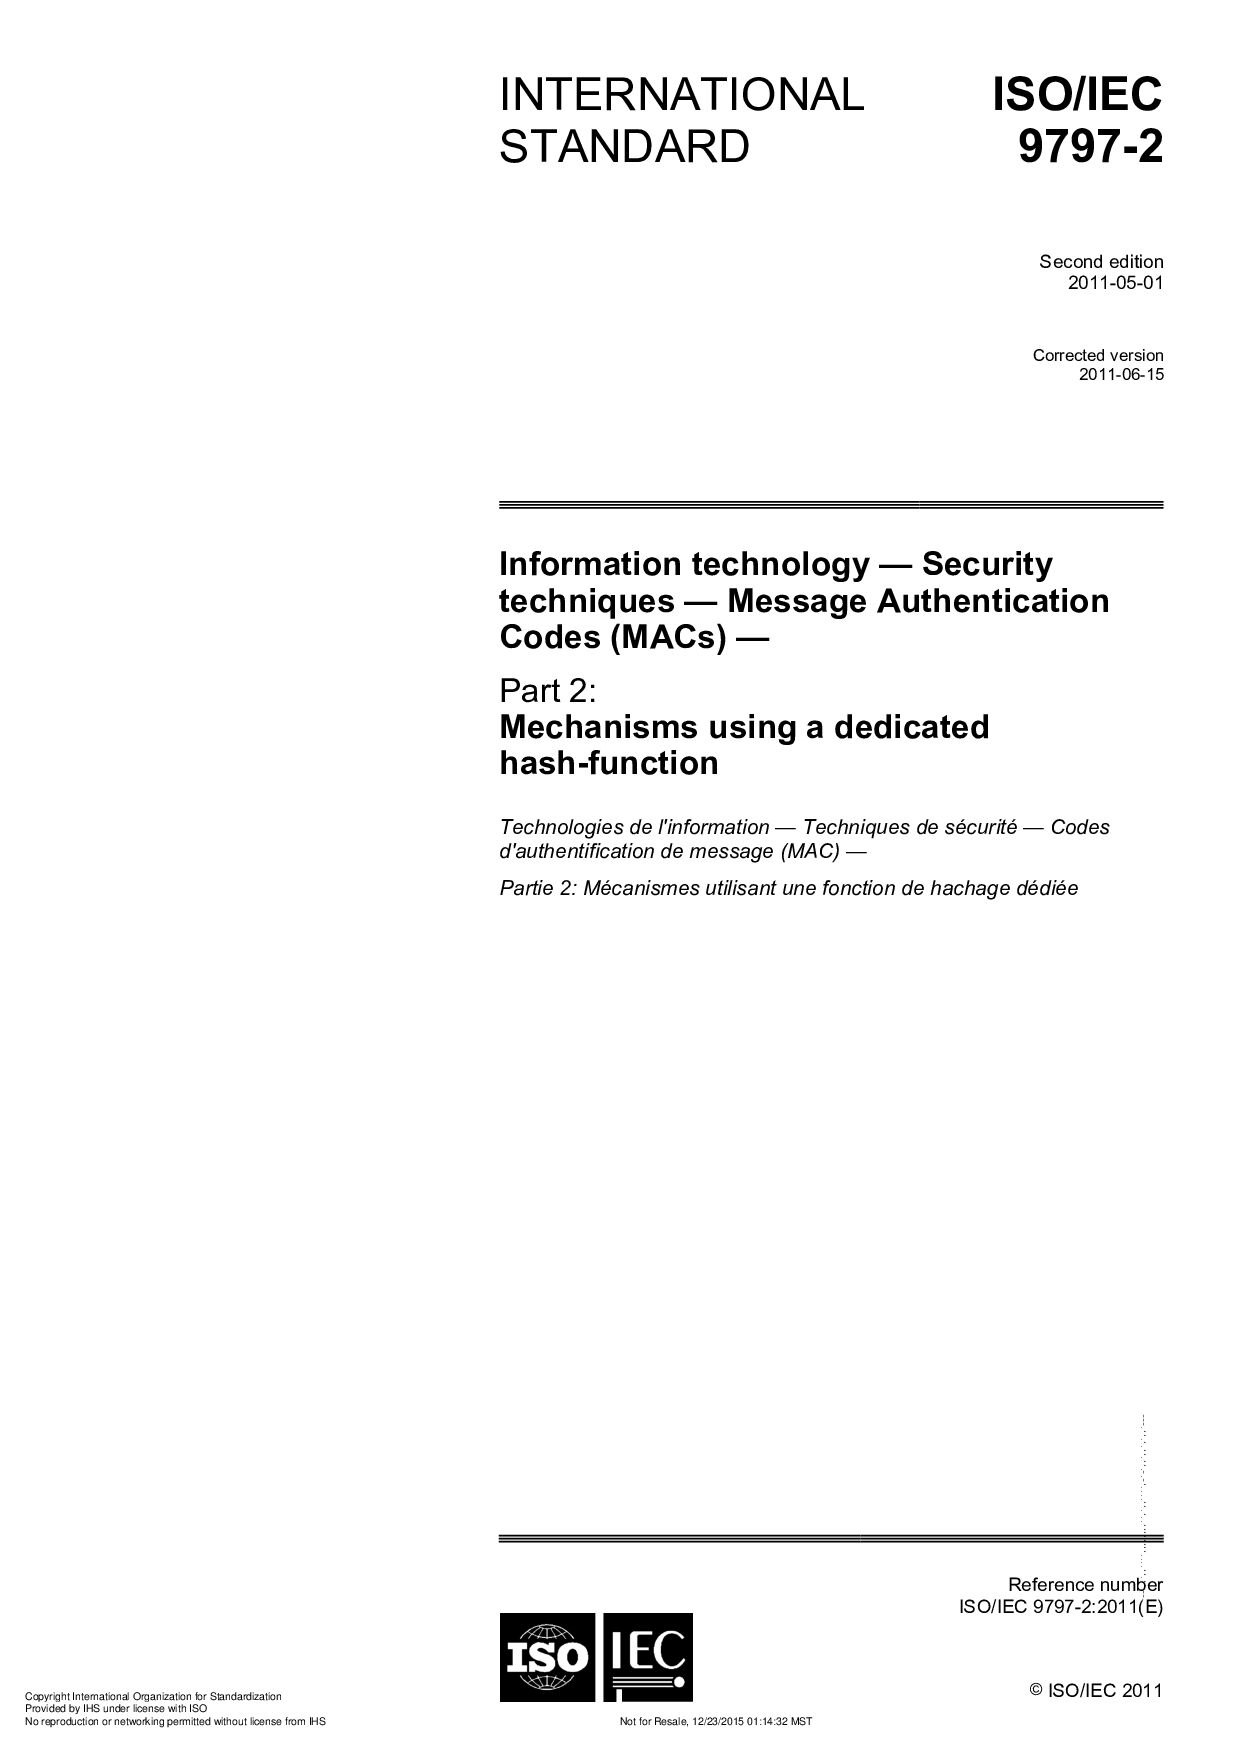 ISO/IEC 9797-2:2011/Cor 1:2011封面图